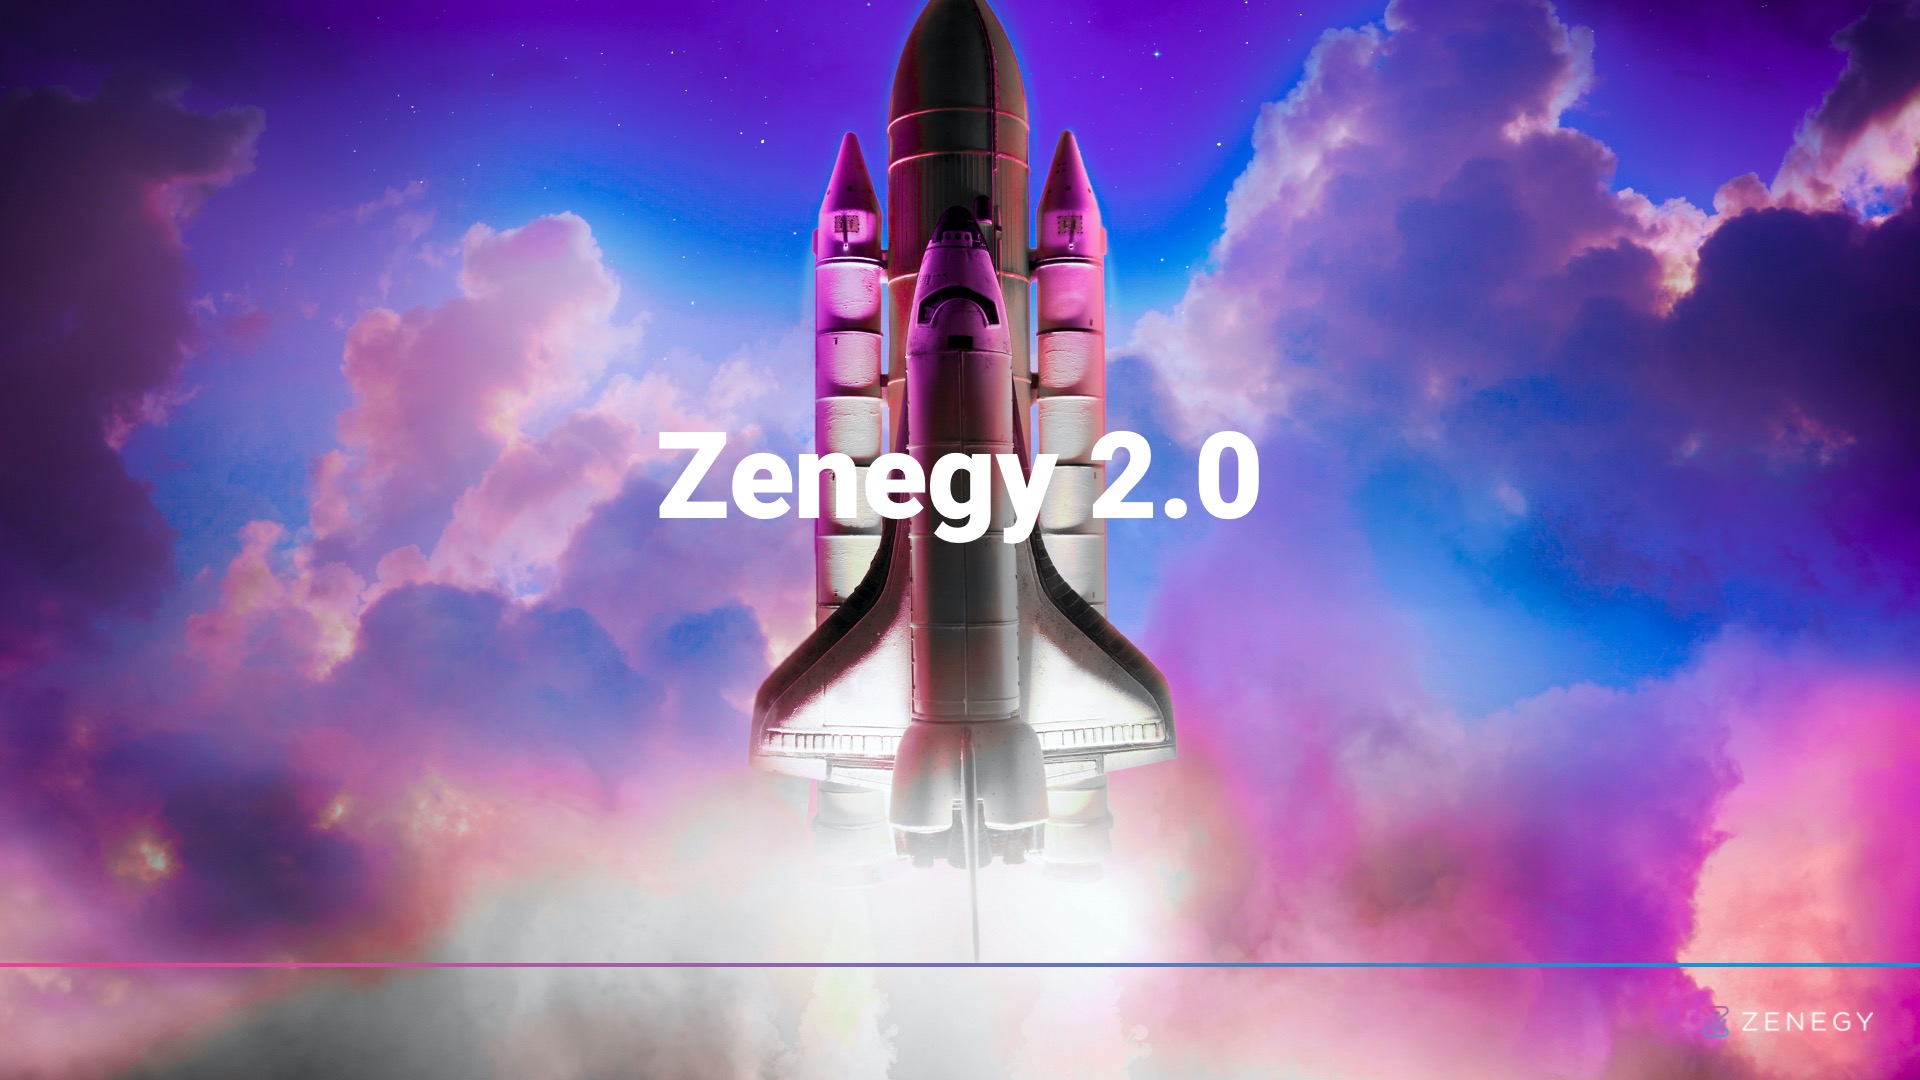 Zenegy - Brand